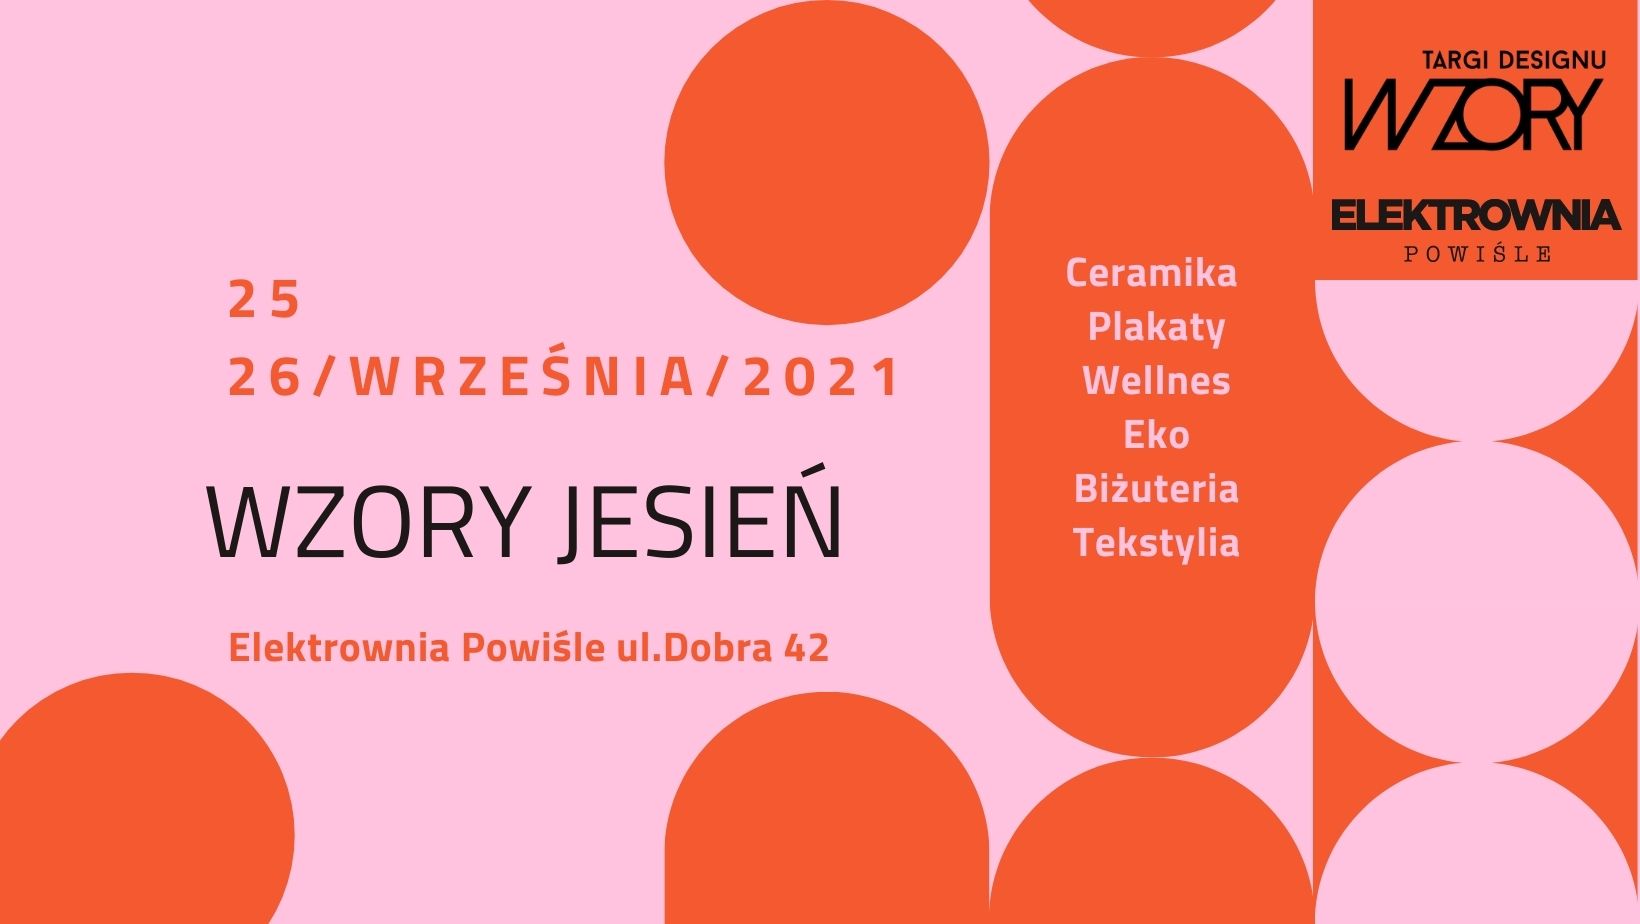 Jesienna odsłona Targów Designu WZORY już w ten weekend – dołącz i celebruj polski design!